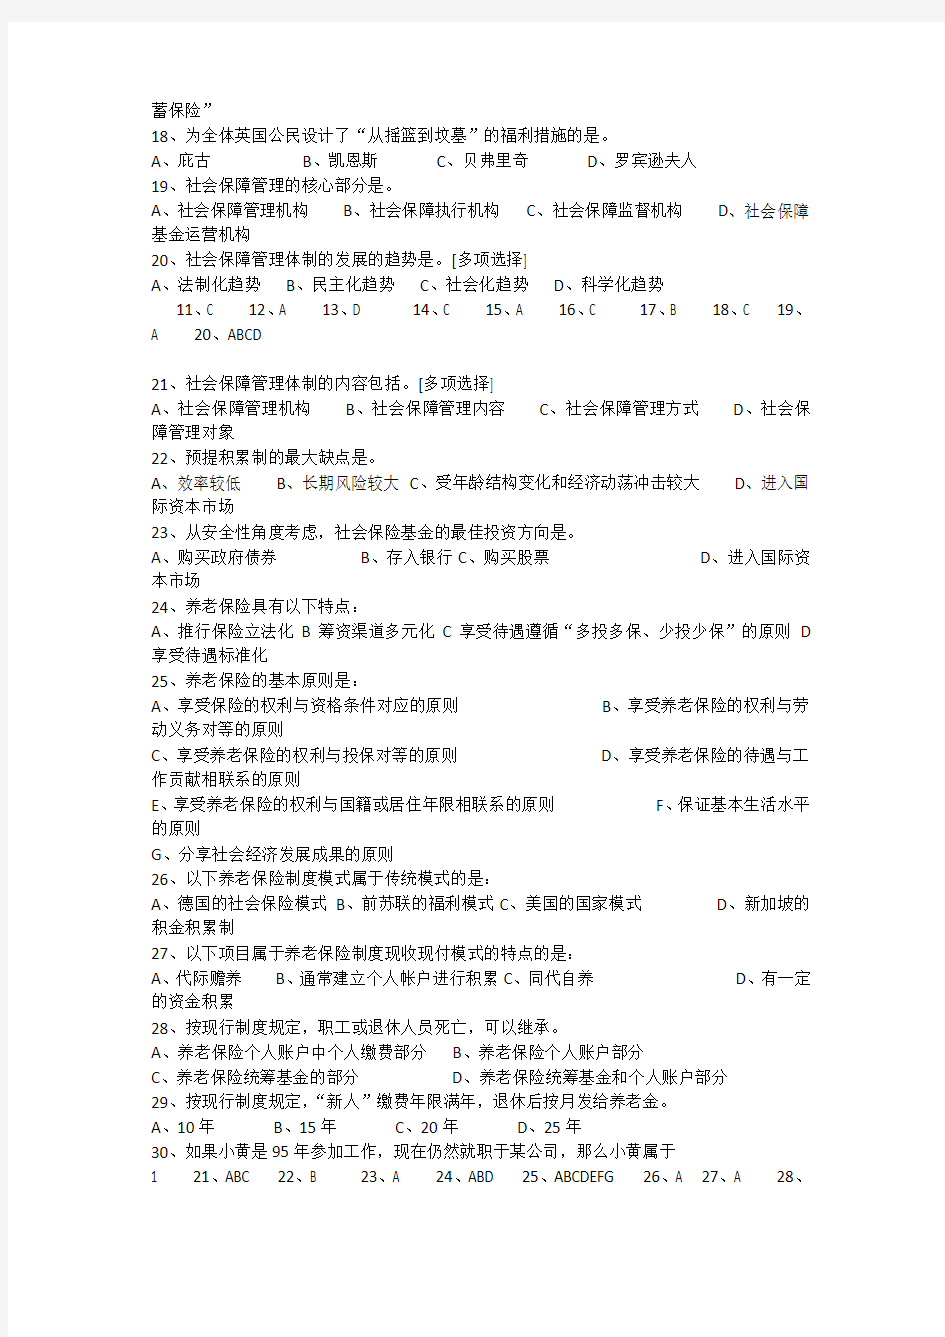 2013年甘肃省10000名考试社会保障选择题及答案详解